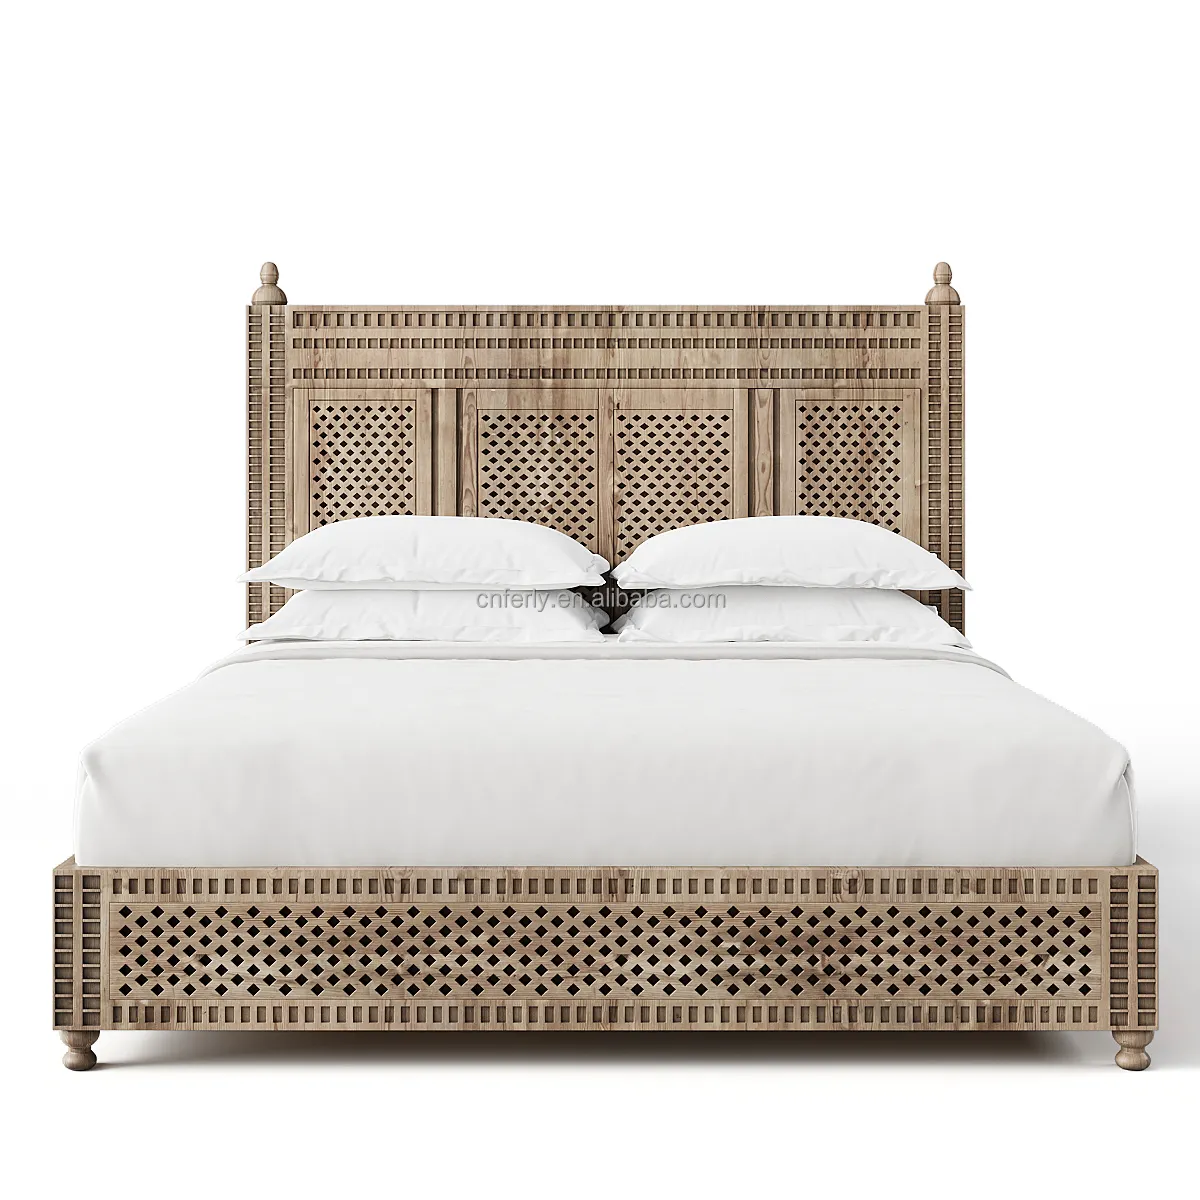 Ферли, мебель для спальни в американском стиле, в стиле ретро, деревянная кровать из массива дерева, натуральный дубовый полый деревянный каркас кровати размера «king-size»